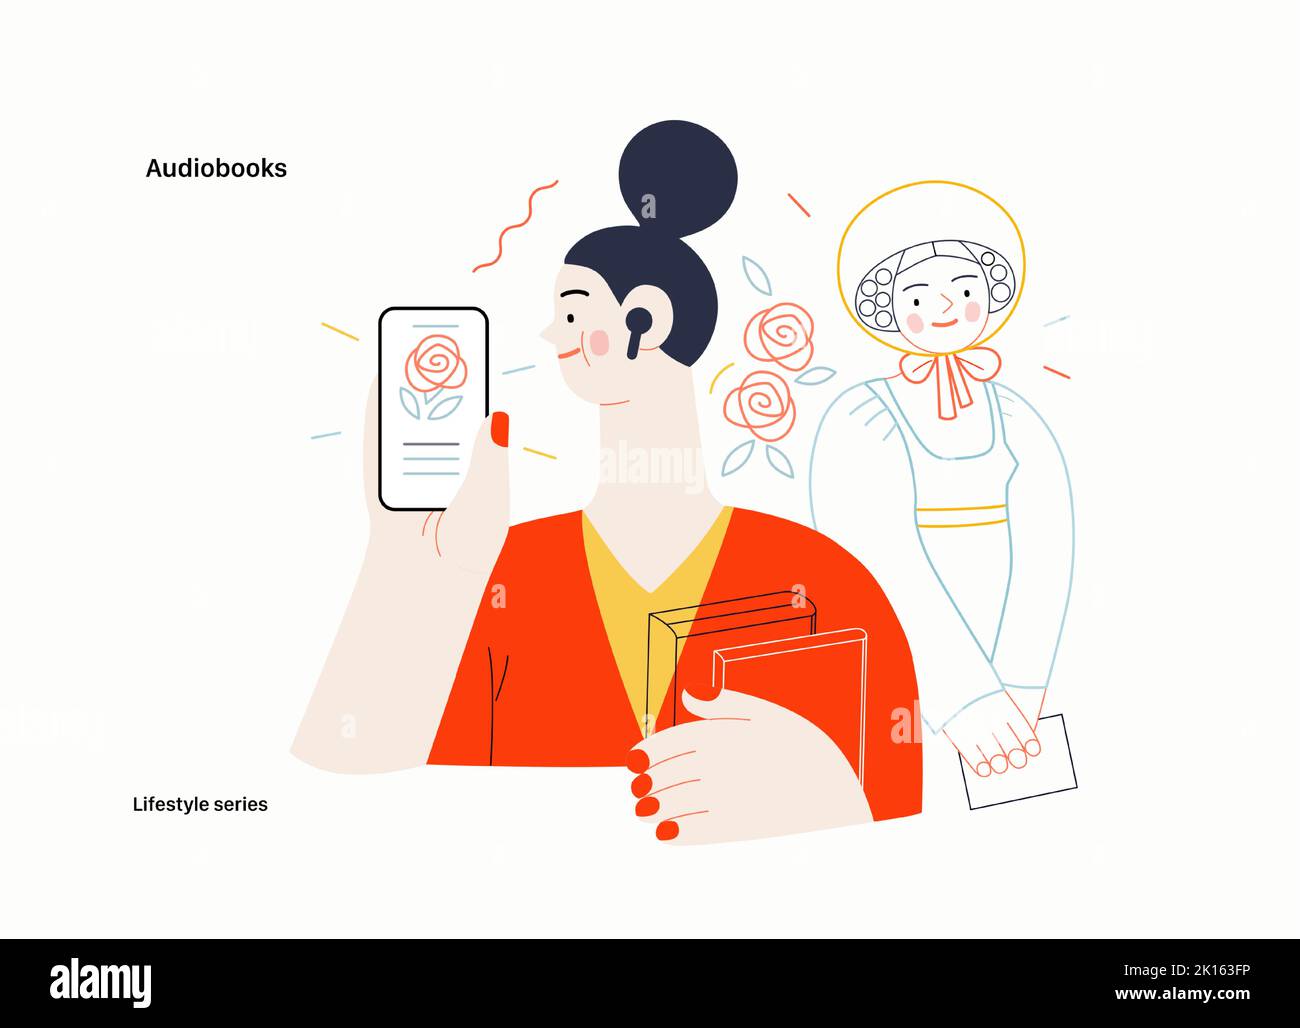 Lifestyle series - Audiobooks - moderna immagine vettoriale piatta di una donna che ascolta un audiolibro con le gemme nell'applicazione tablet e un vittoriano Illustrazione Vettoriale